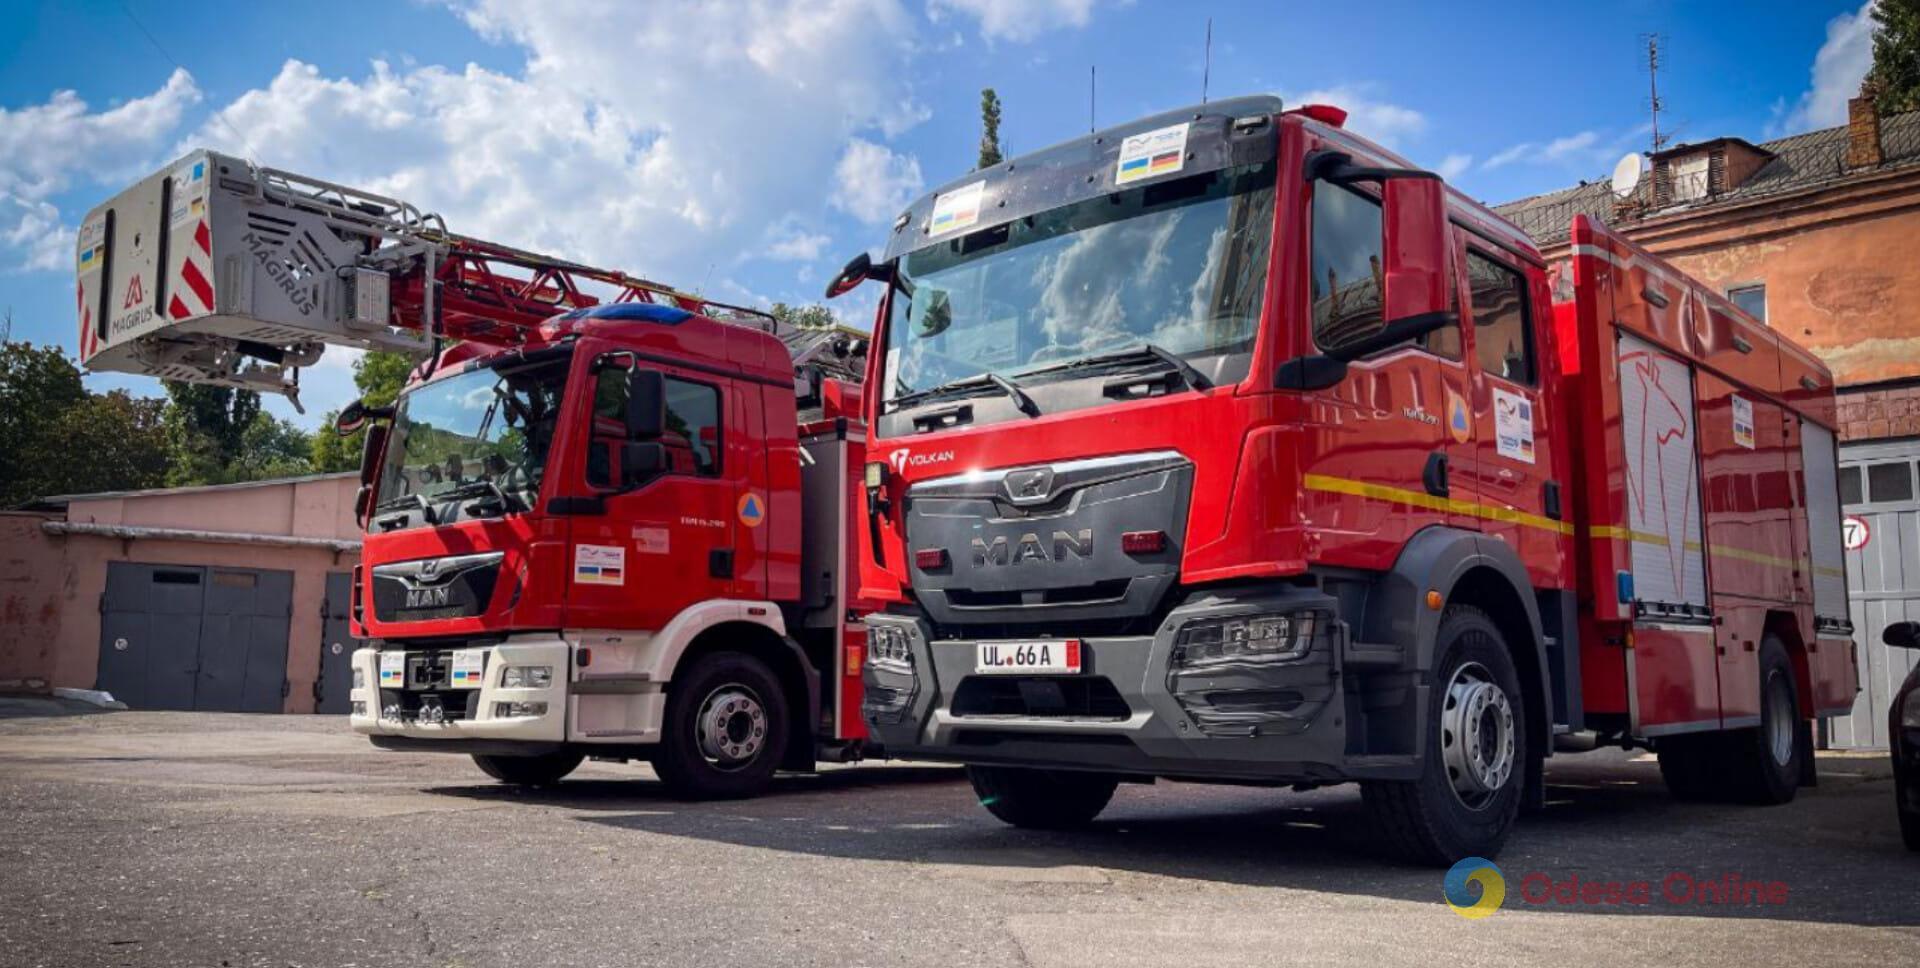 Гуманитарная помощь из Германии: одесские пожарные получили два спецавтомобиля